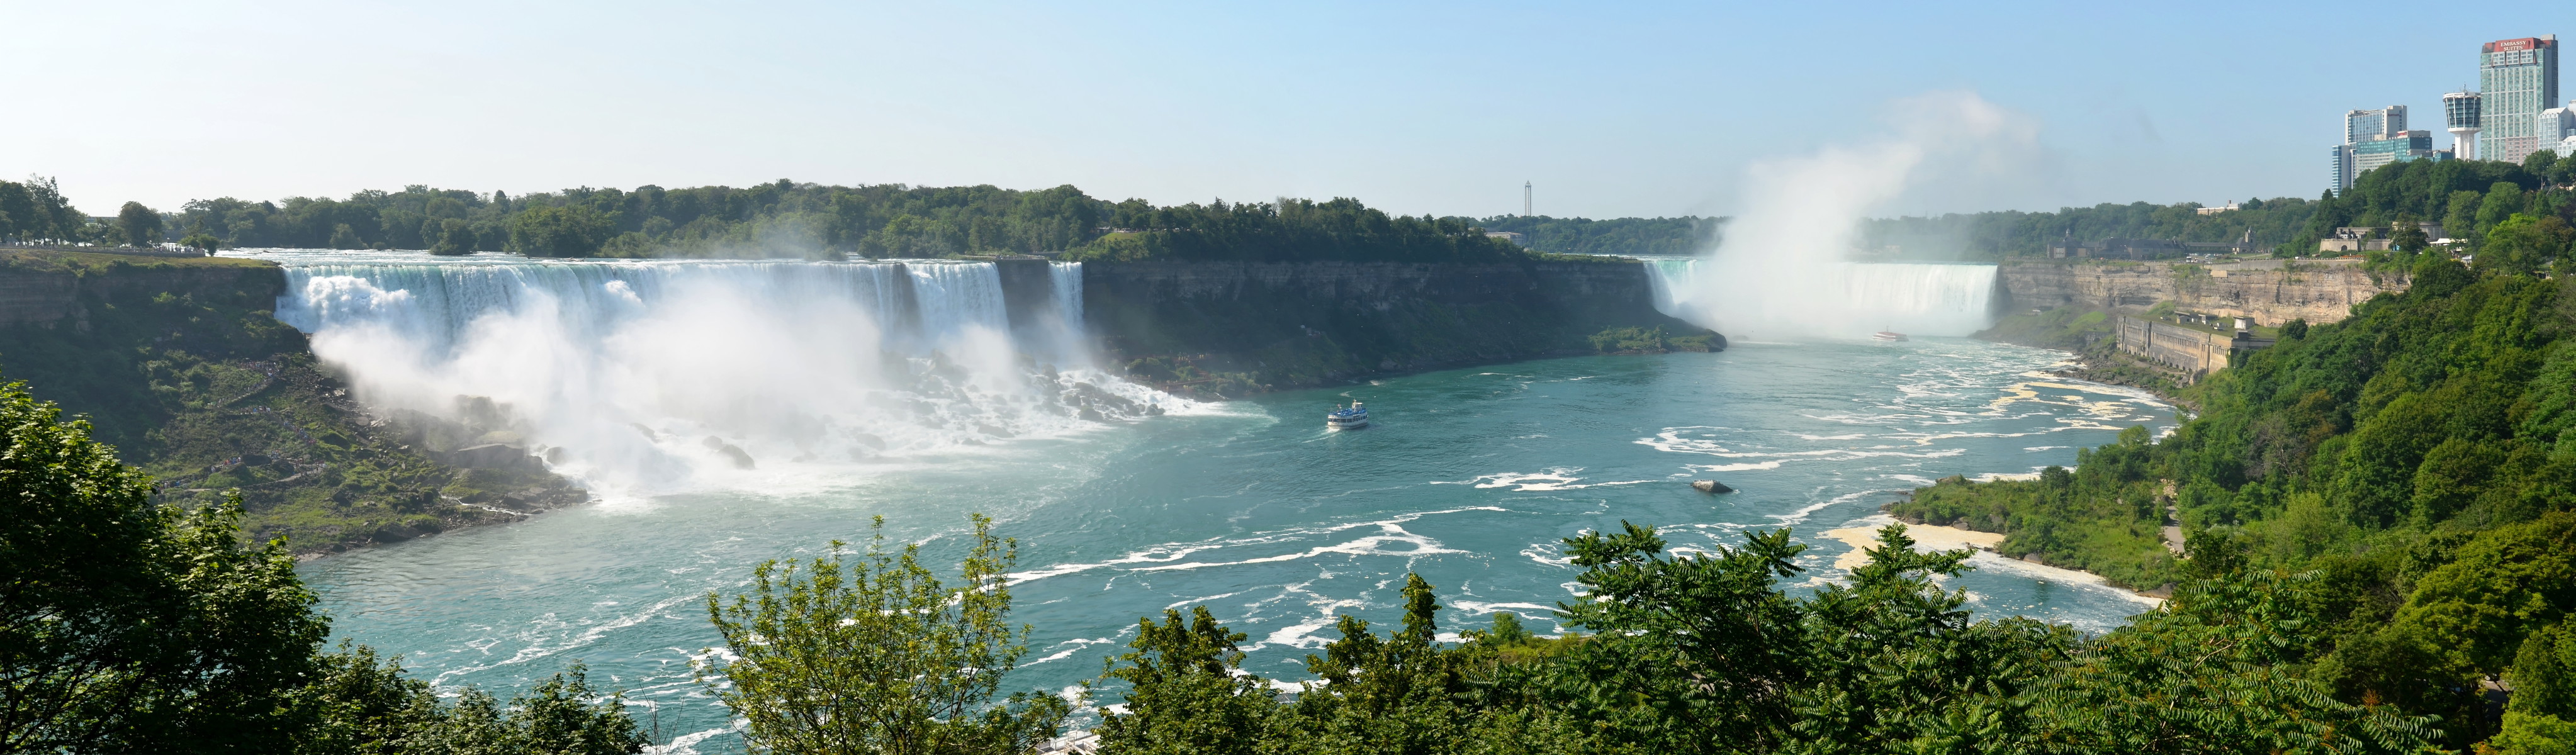 Niagara Falls - Canada3.jpg